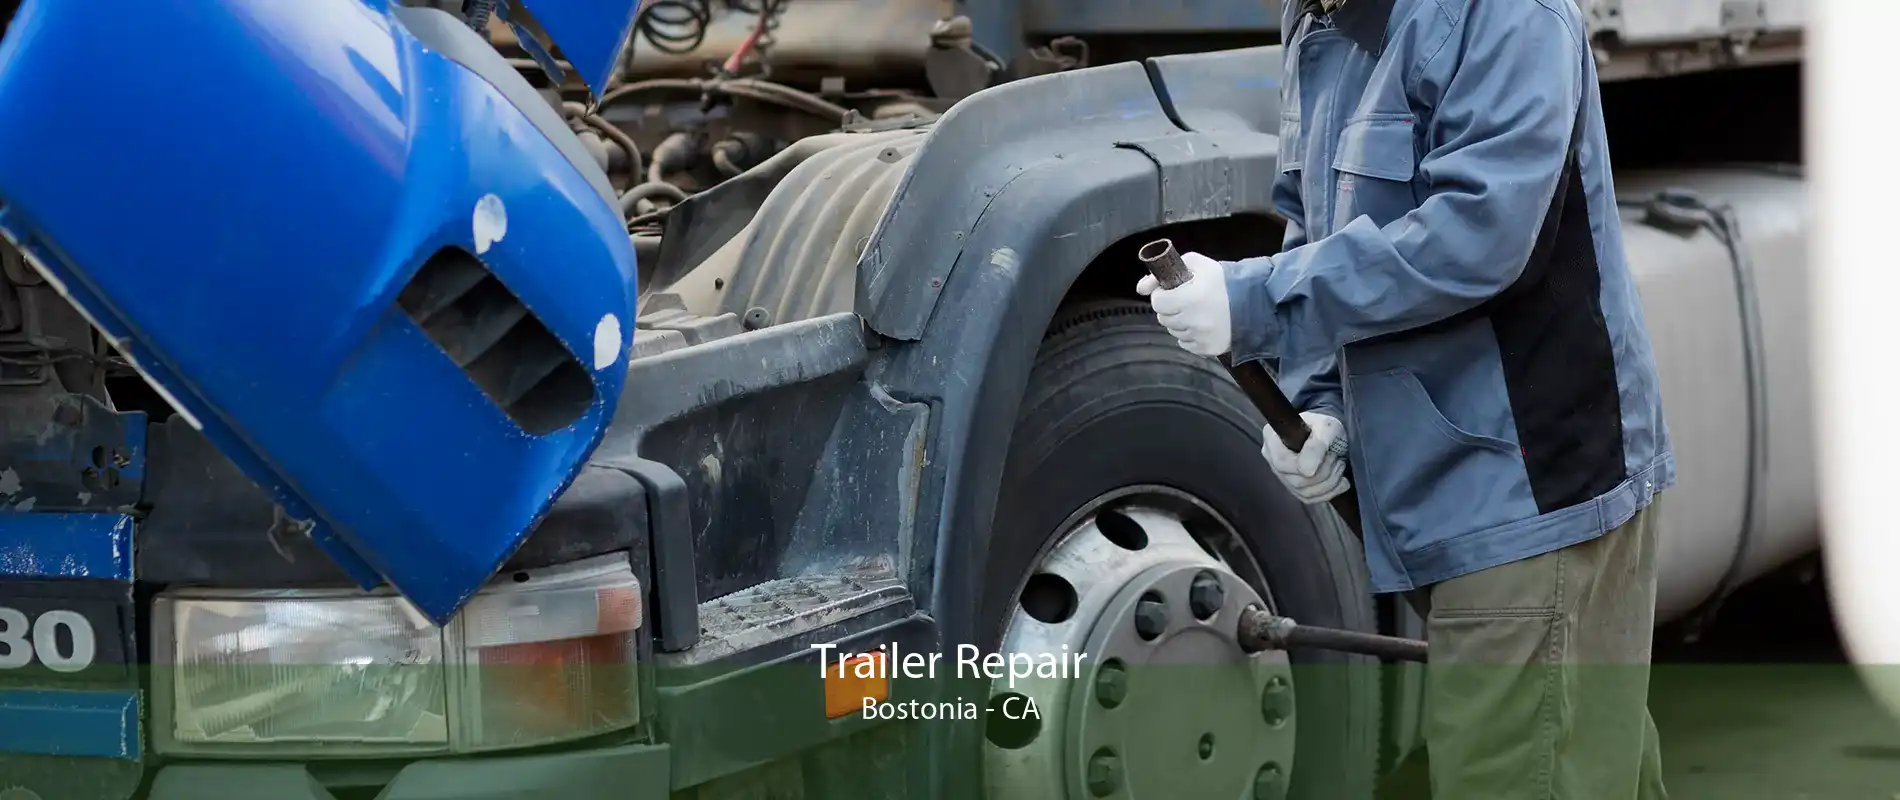 Trailer Repair Bostonia - CA